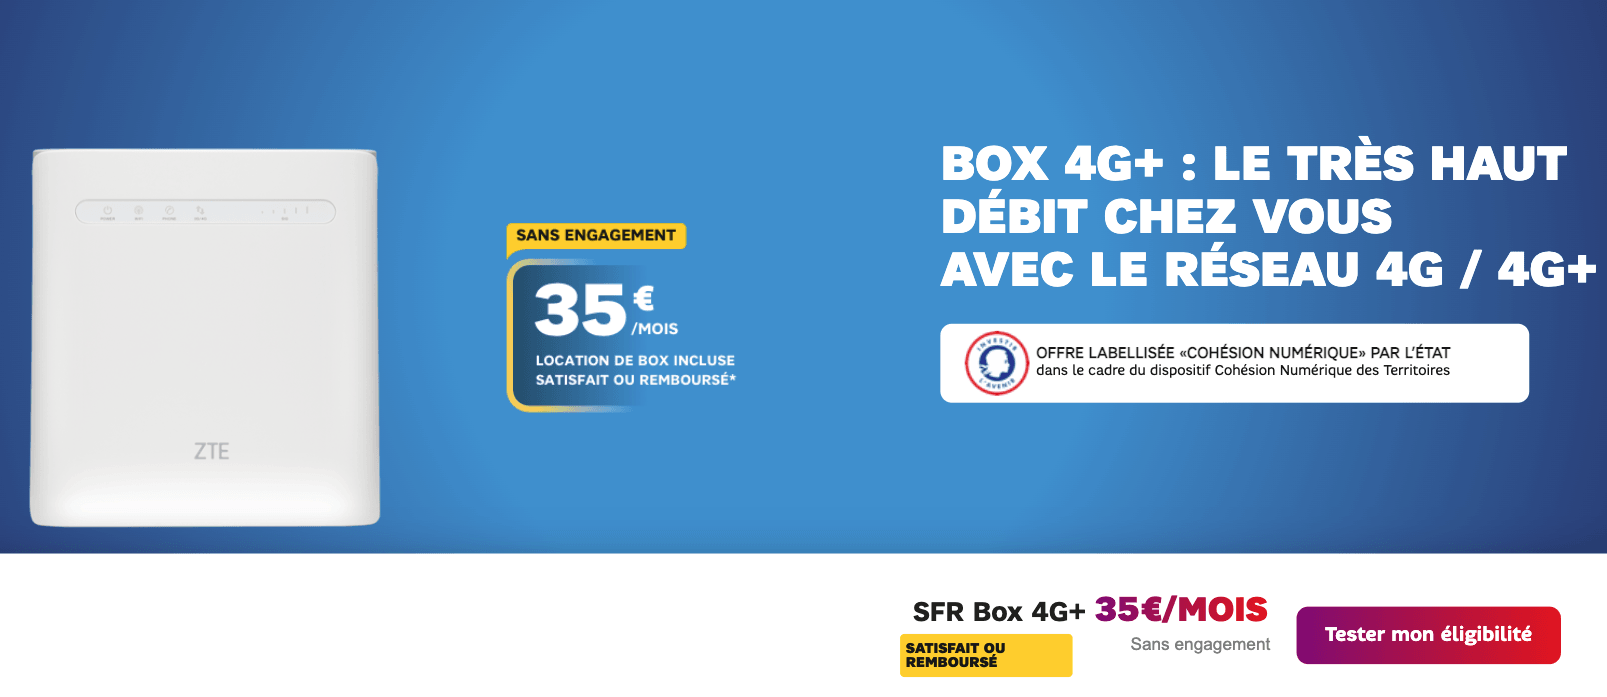 SFR box internet 4G